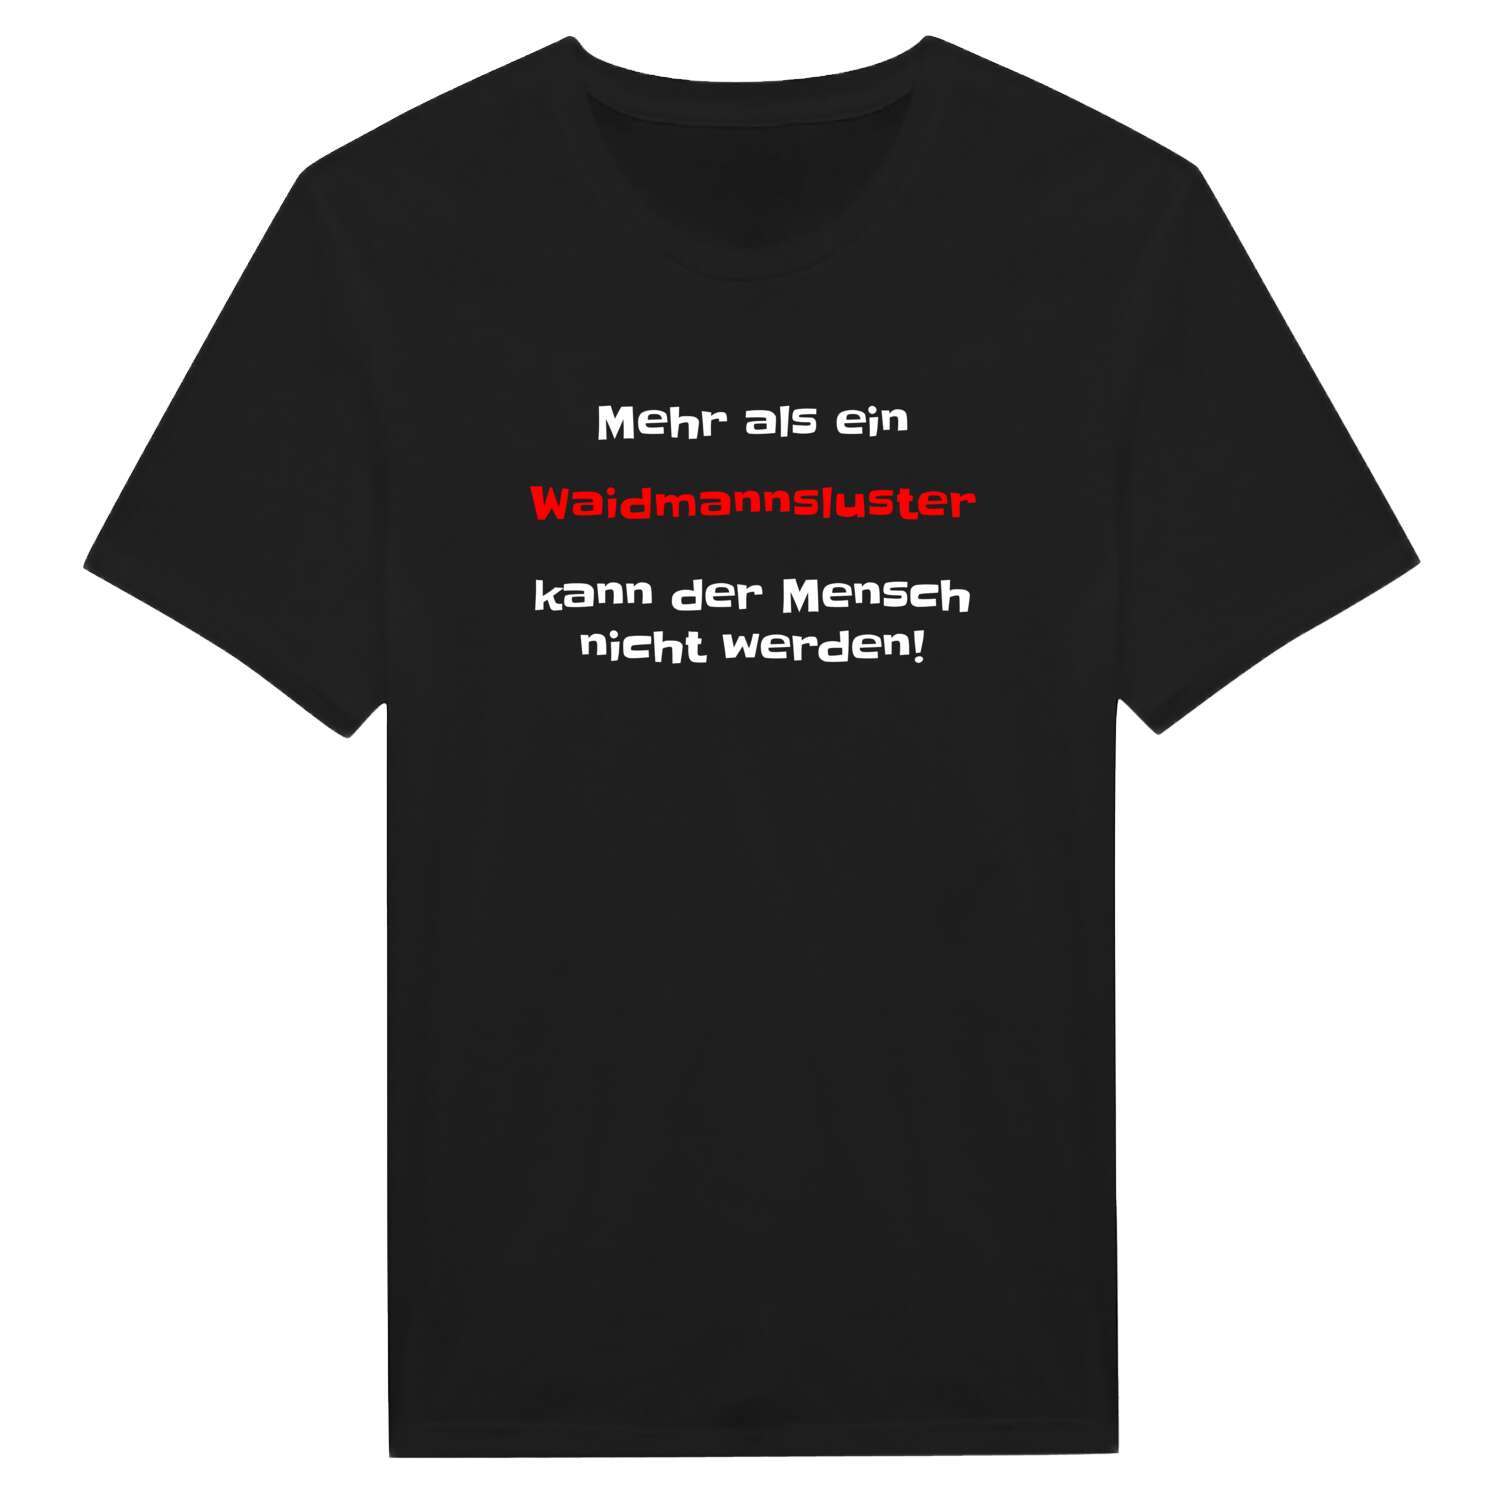 Waidmannslust T-Shirt »Mehr als ein«